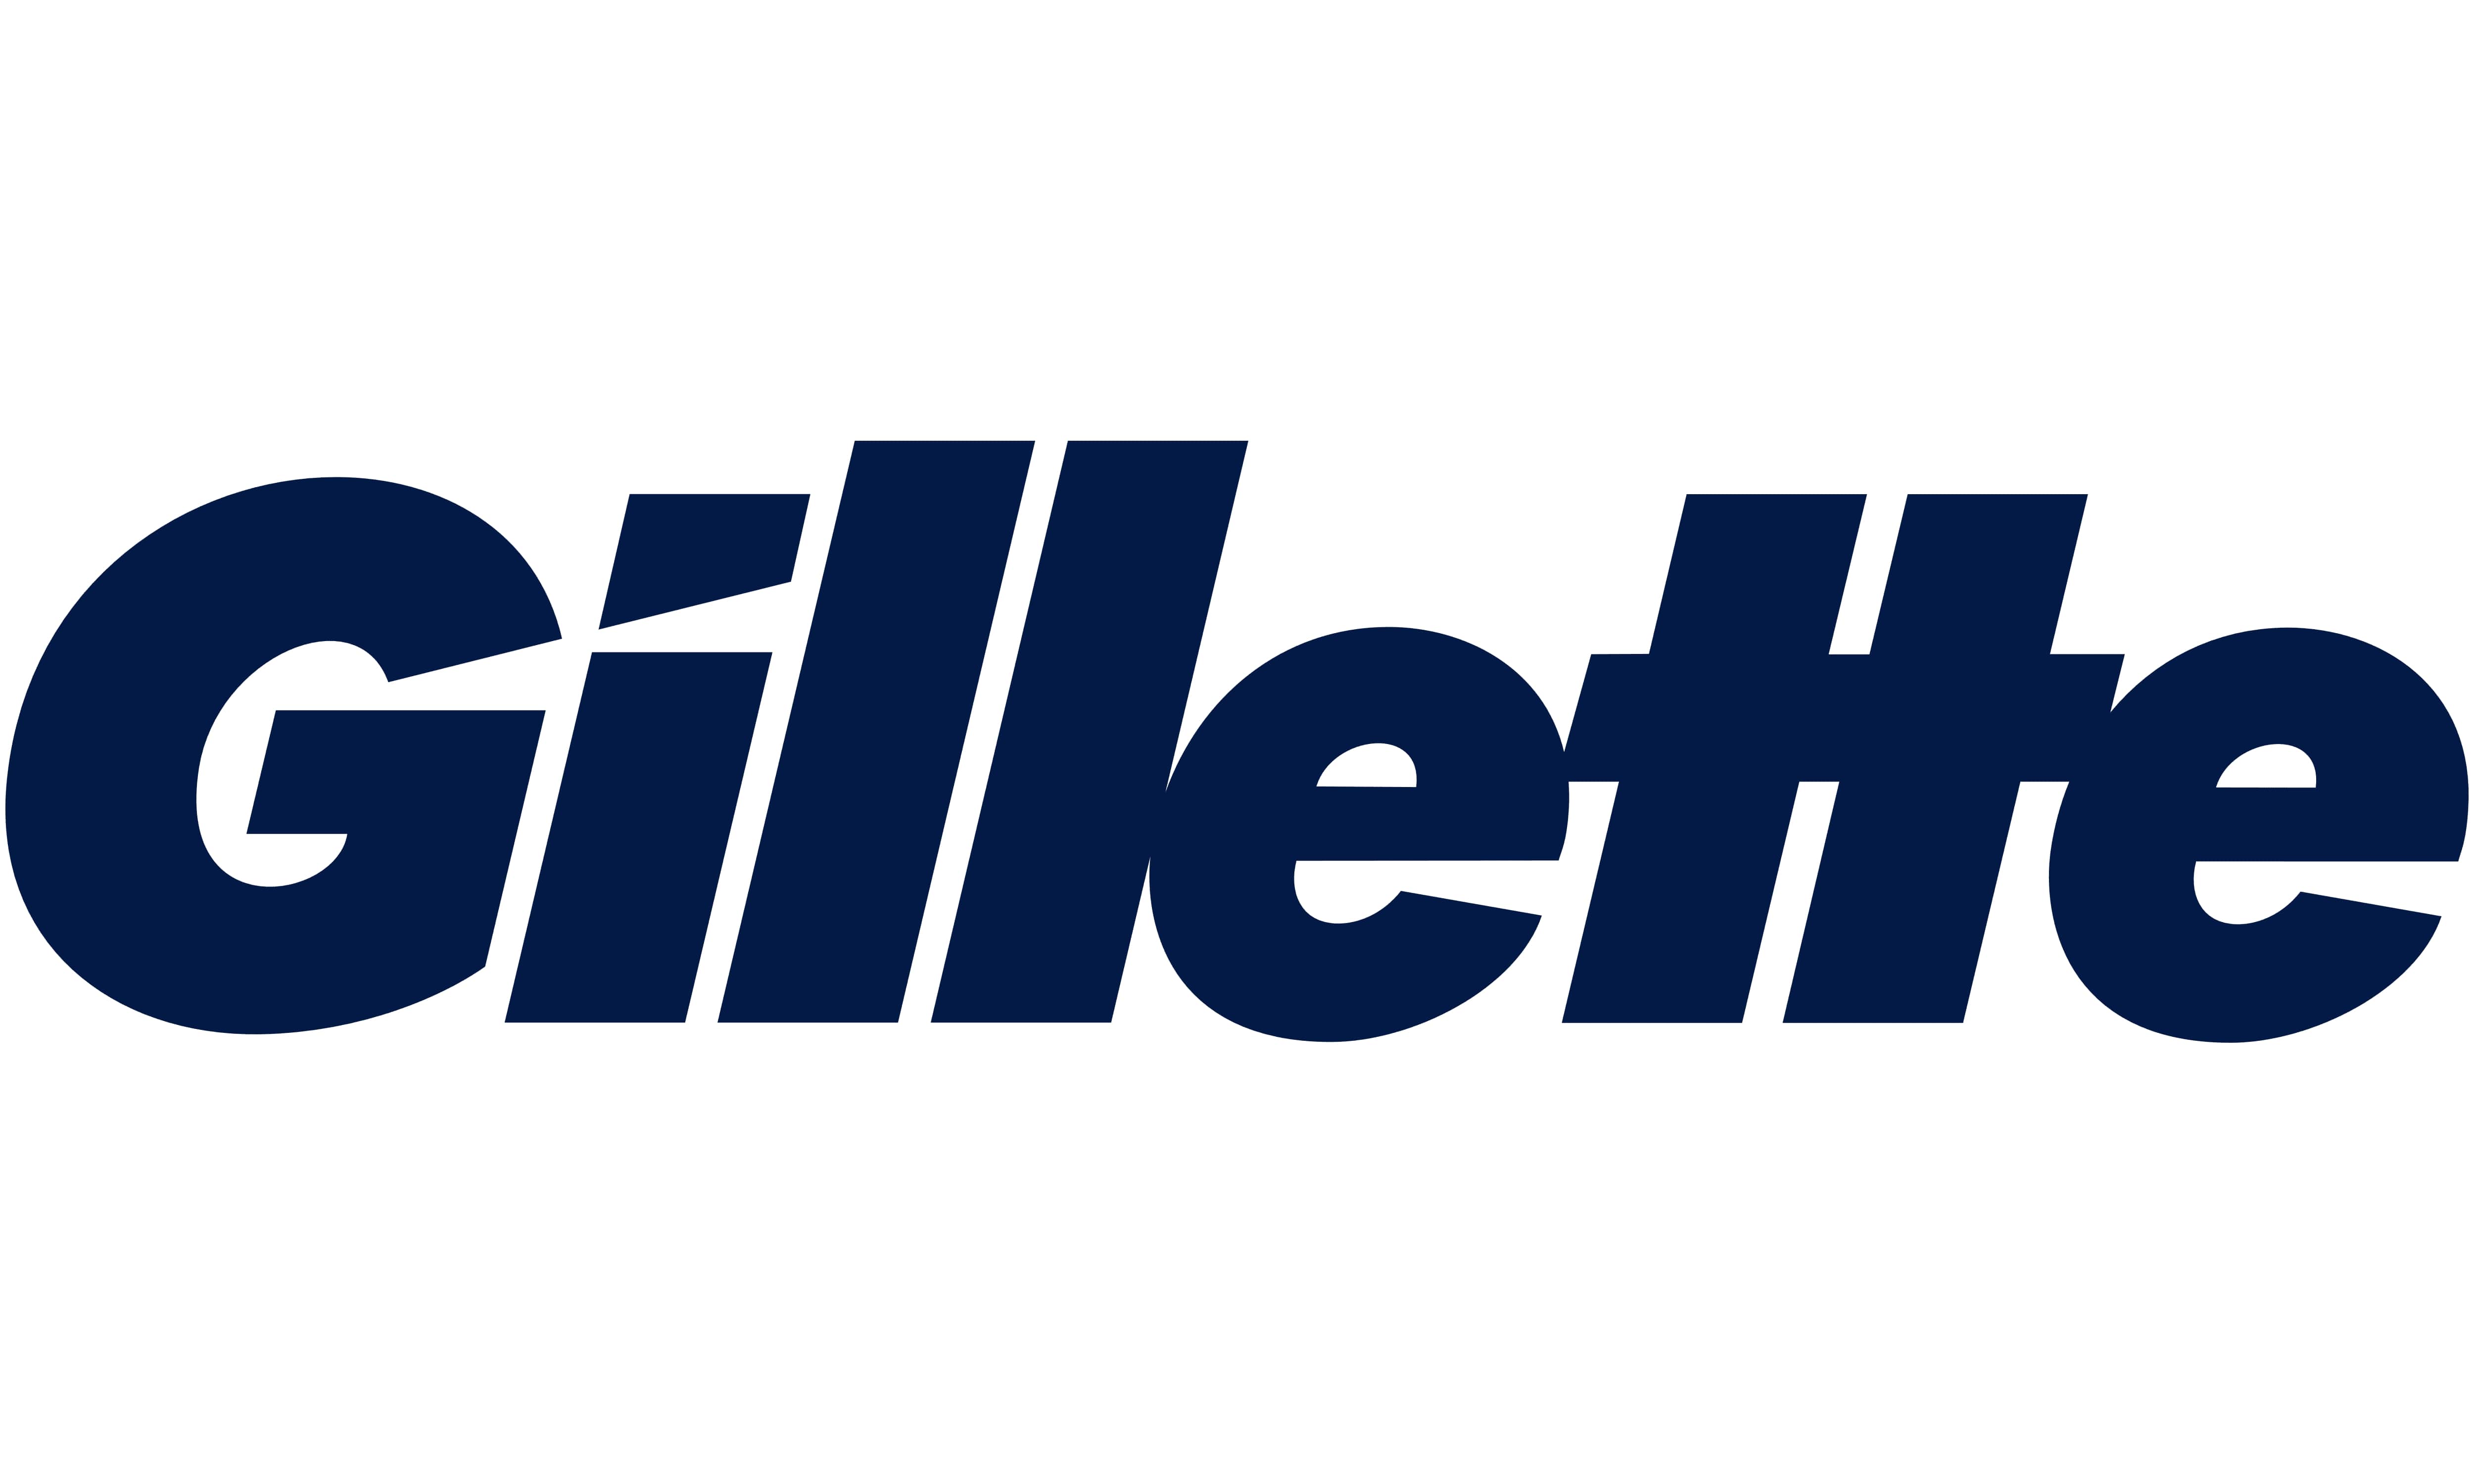 Mẫu thiết kế logo thương hiệu công ty GILLETTE 1